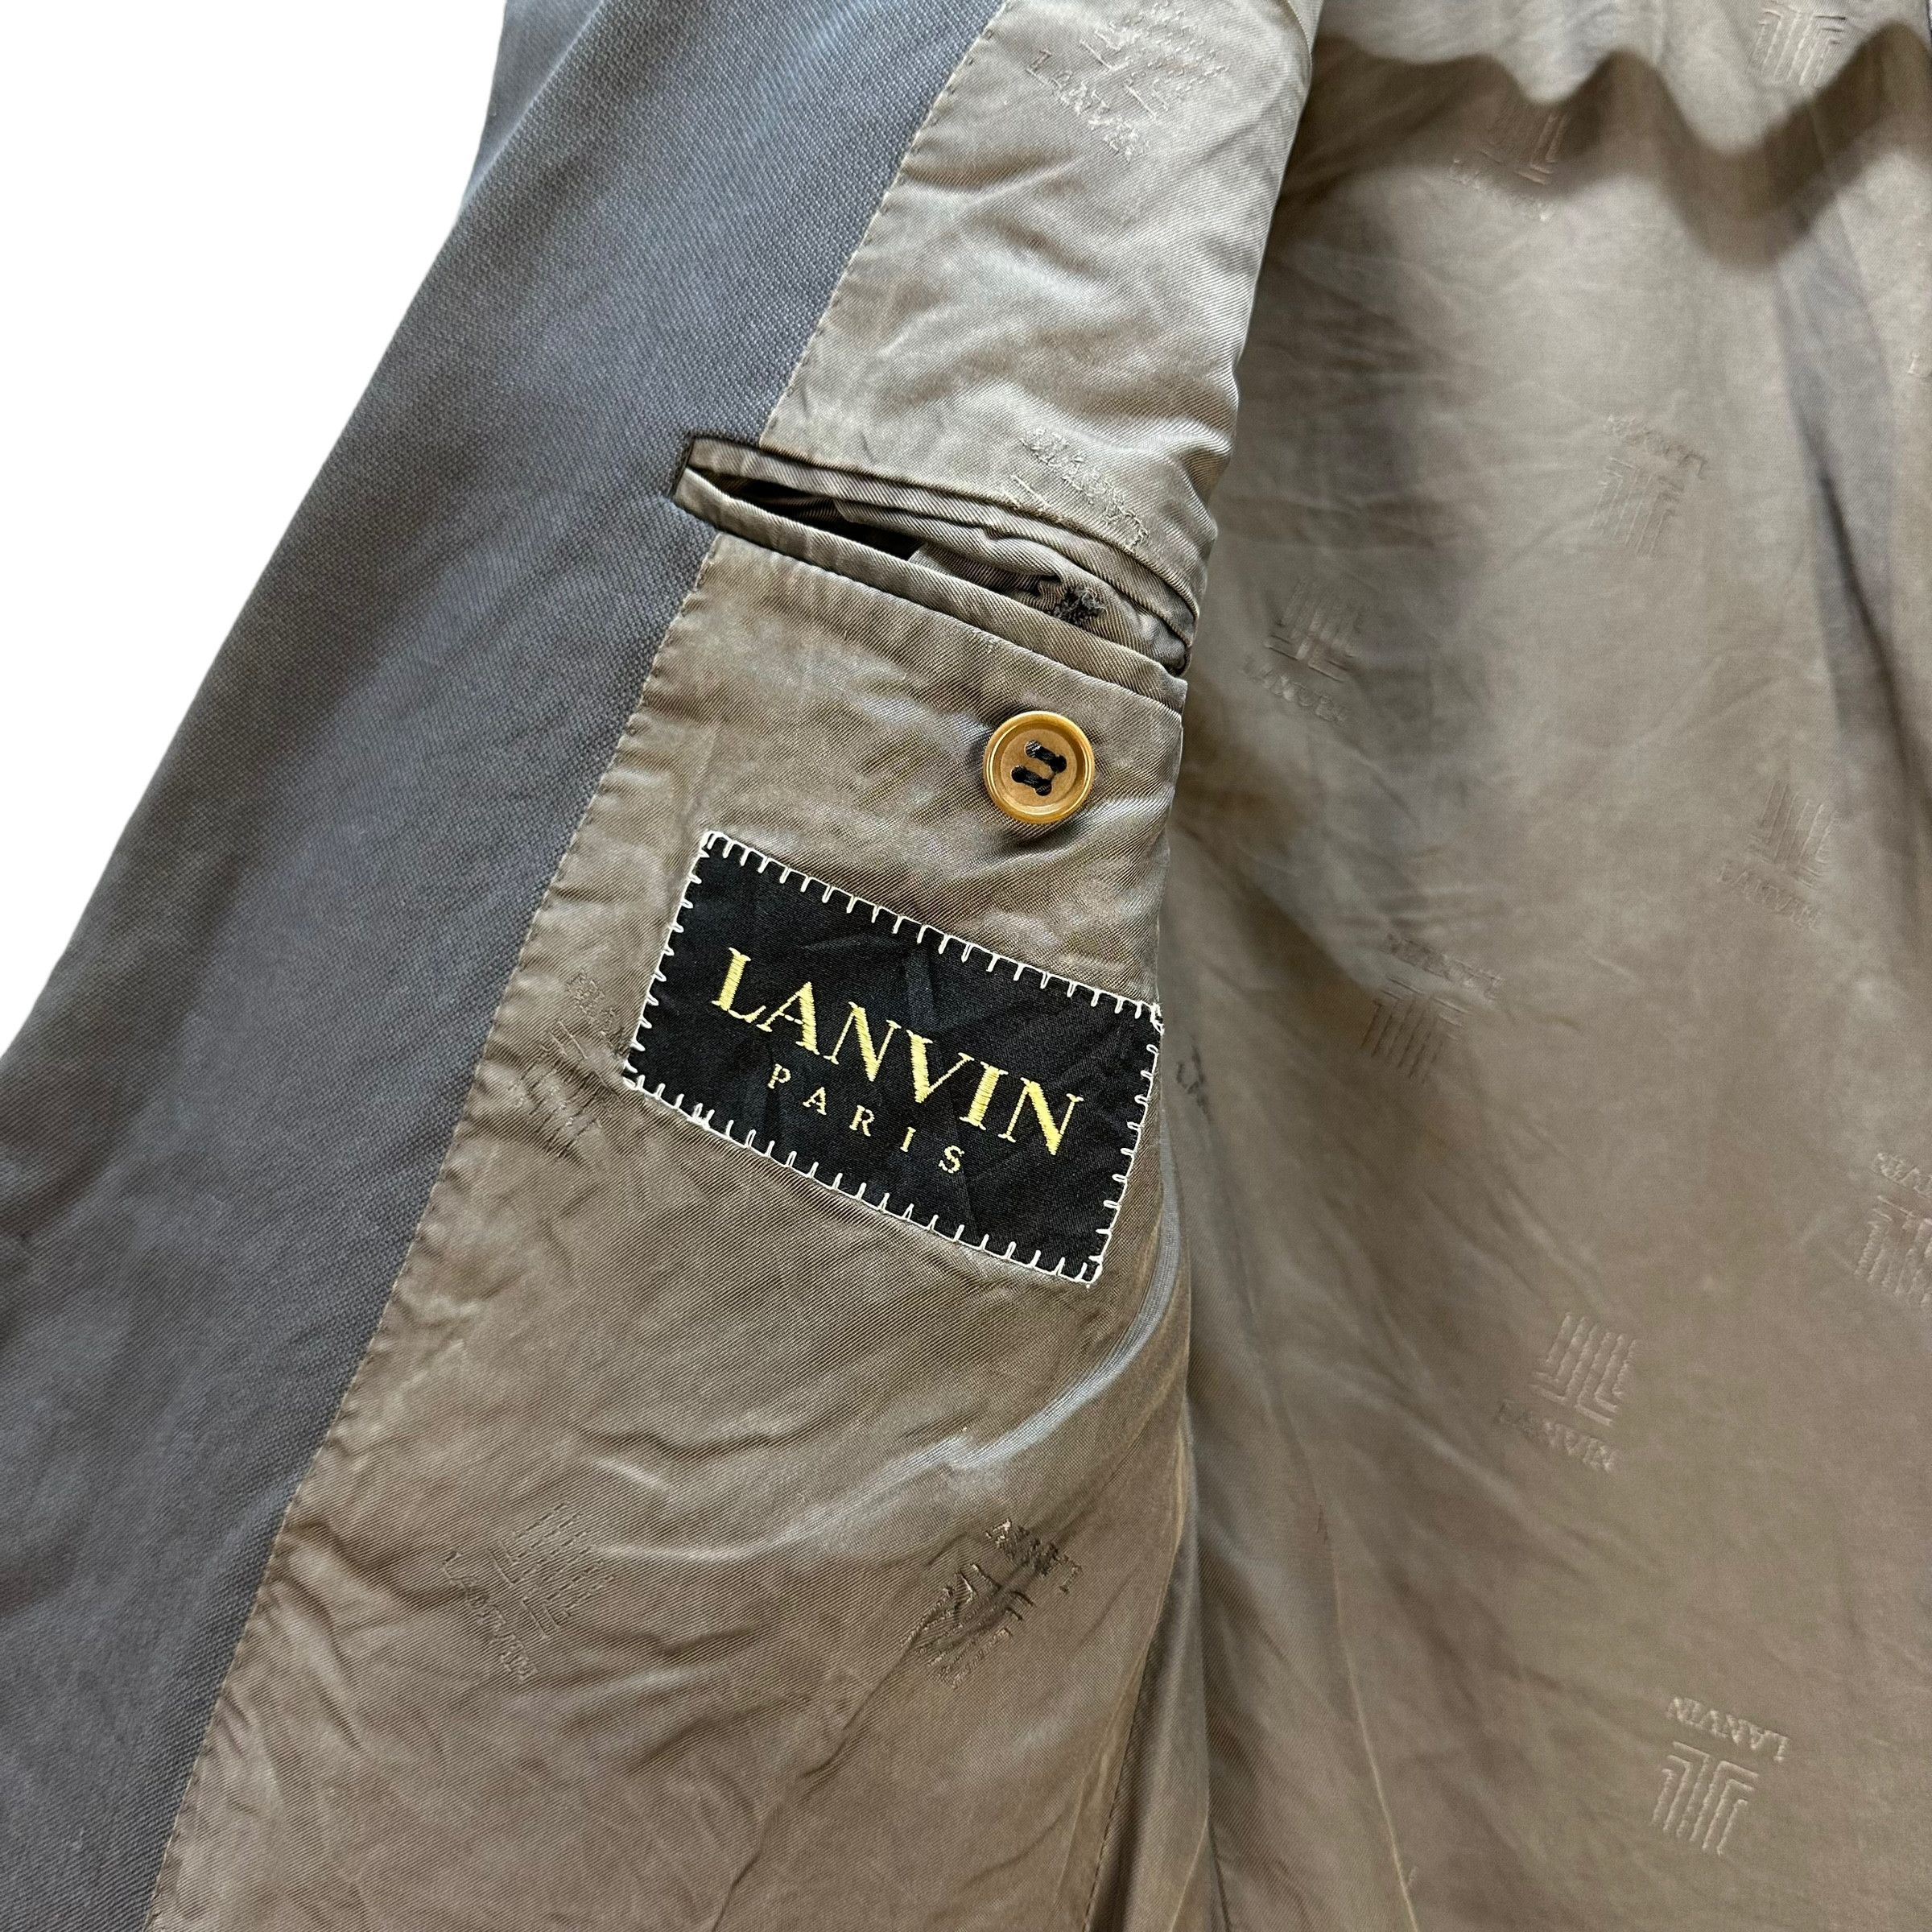 Lanvin Paris Suit Jacket / Blazer #9139-61 - 8